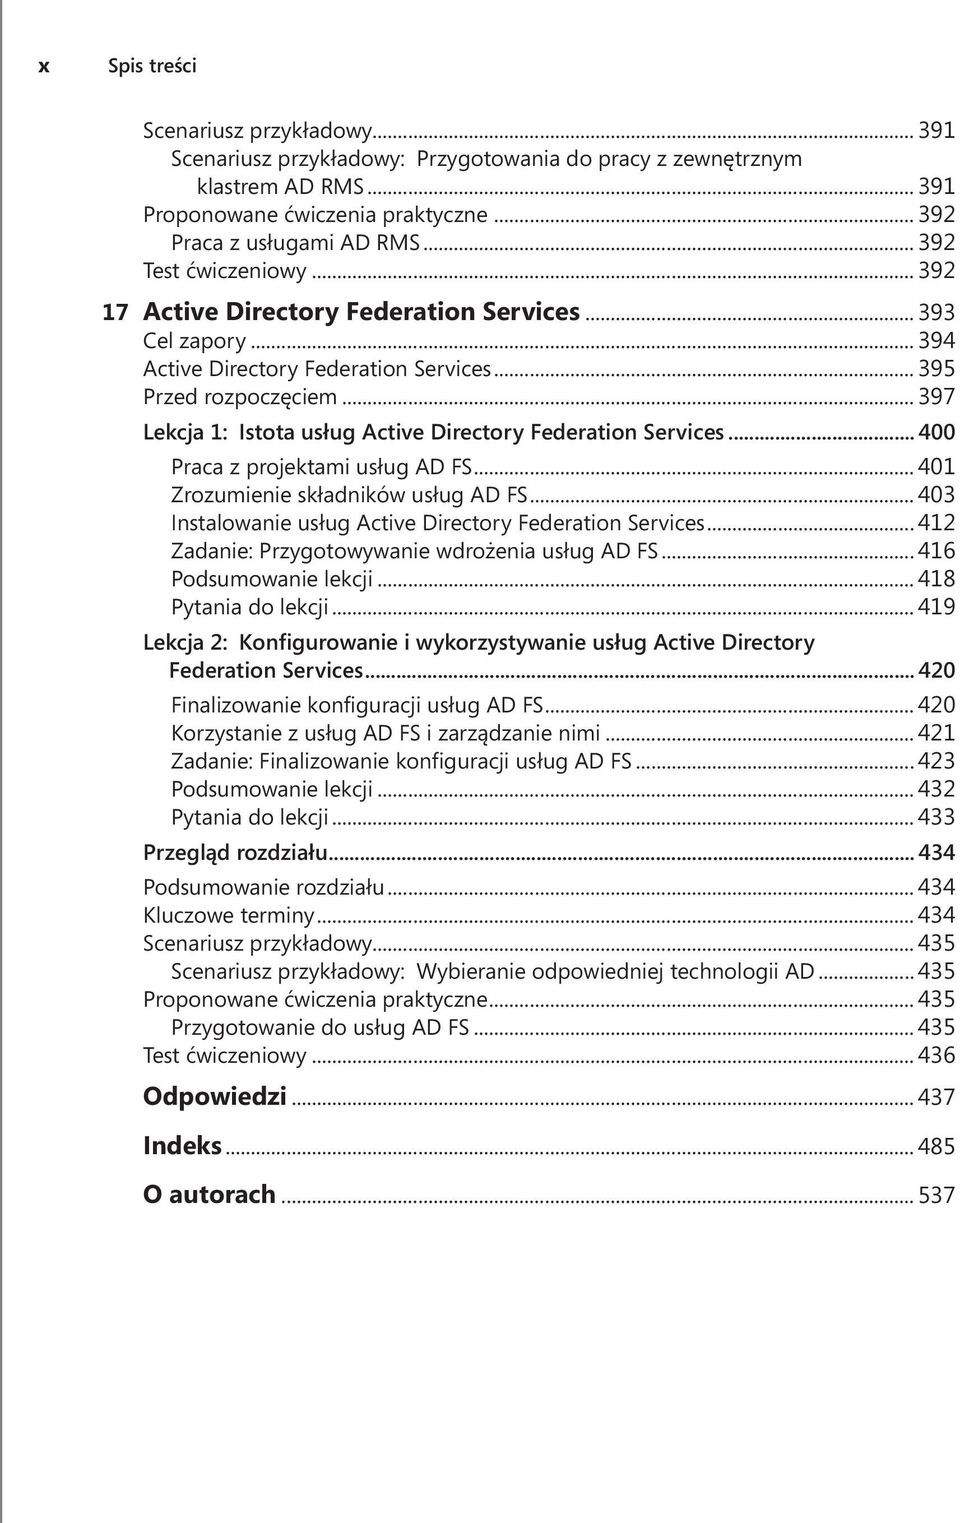 .. 397 Lekcja 1: Istota usług Active Directory Federation Services... 400 Praca z projektami usług AD FS... 401 Zrozumienie składników usług AD FS.